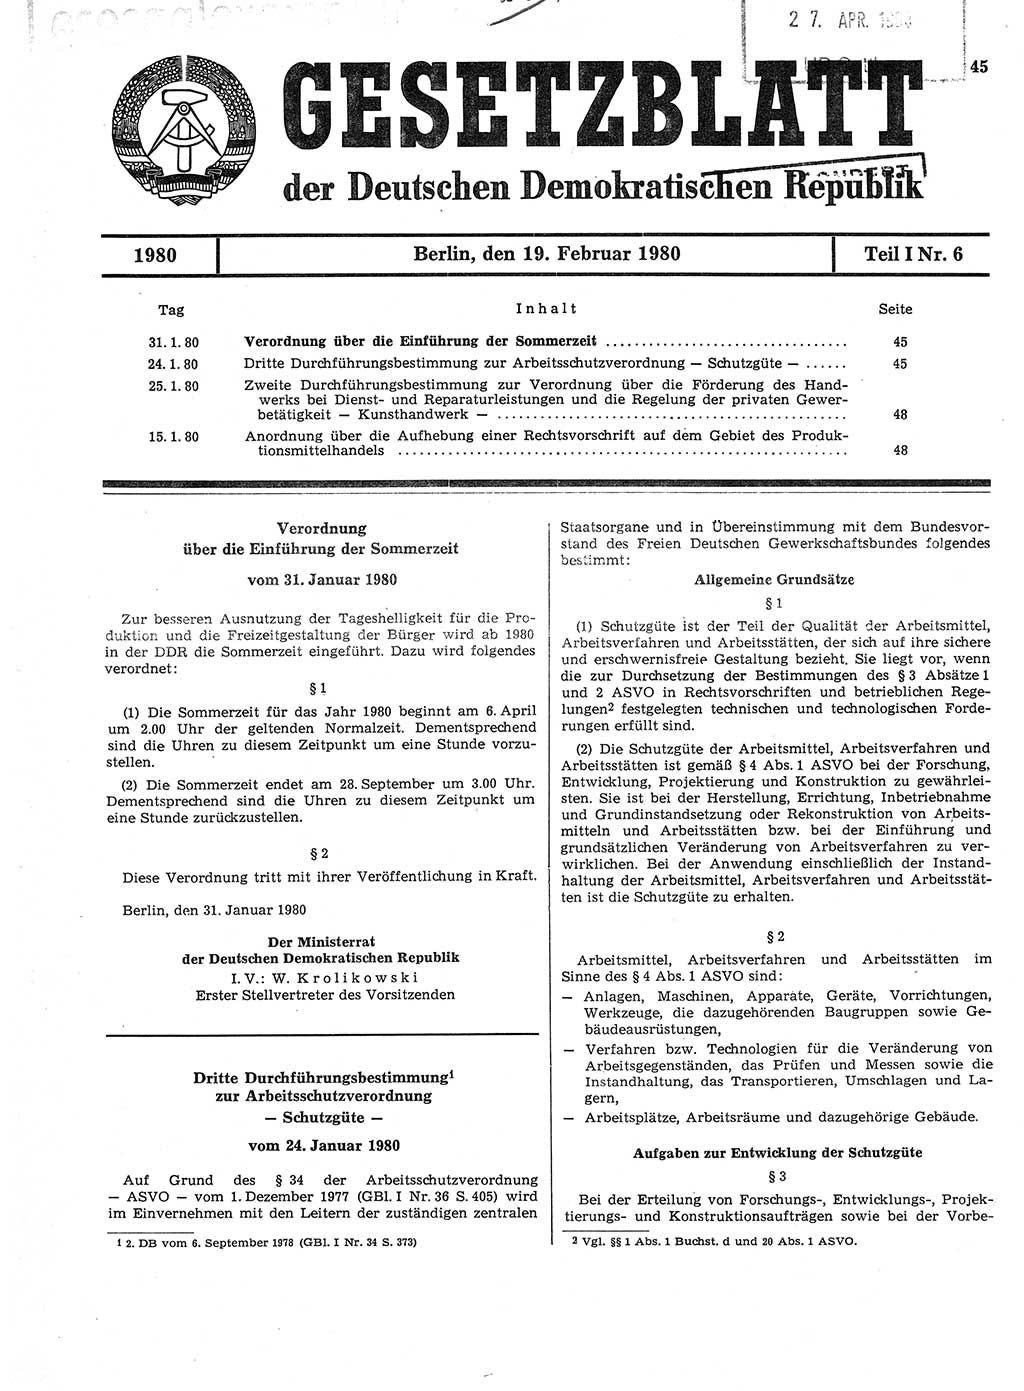 Gesetzblatt (GBl.) der Deutschen Demokratischen Republik (DDR) Teil Ⅰ 1980, Seite 45 (GBl. DDR Ⅰ 1980, S. 45)